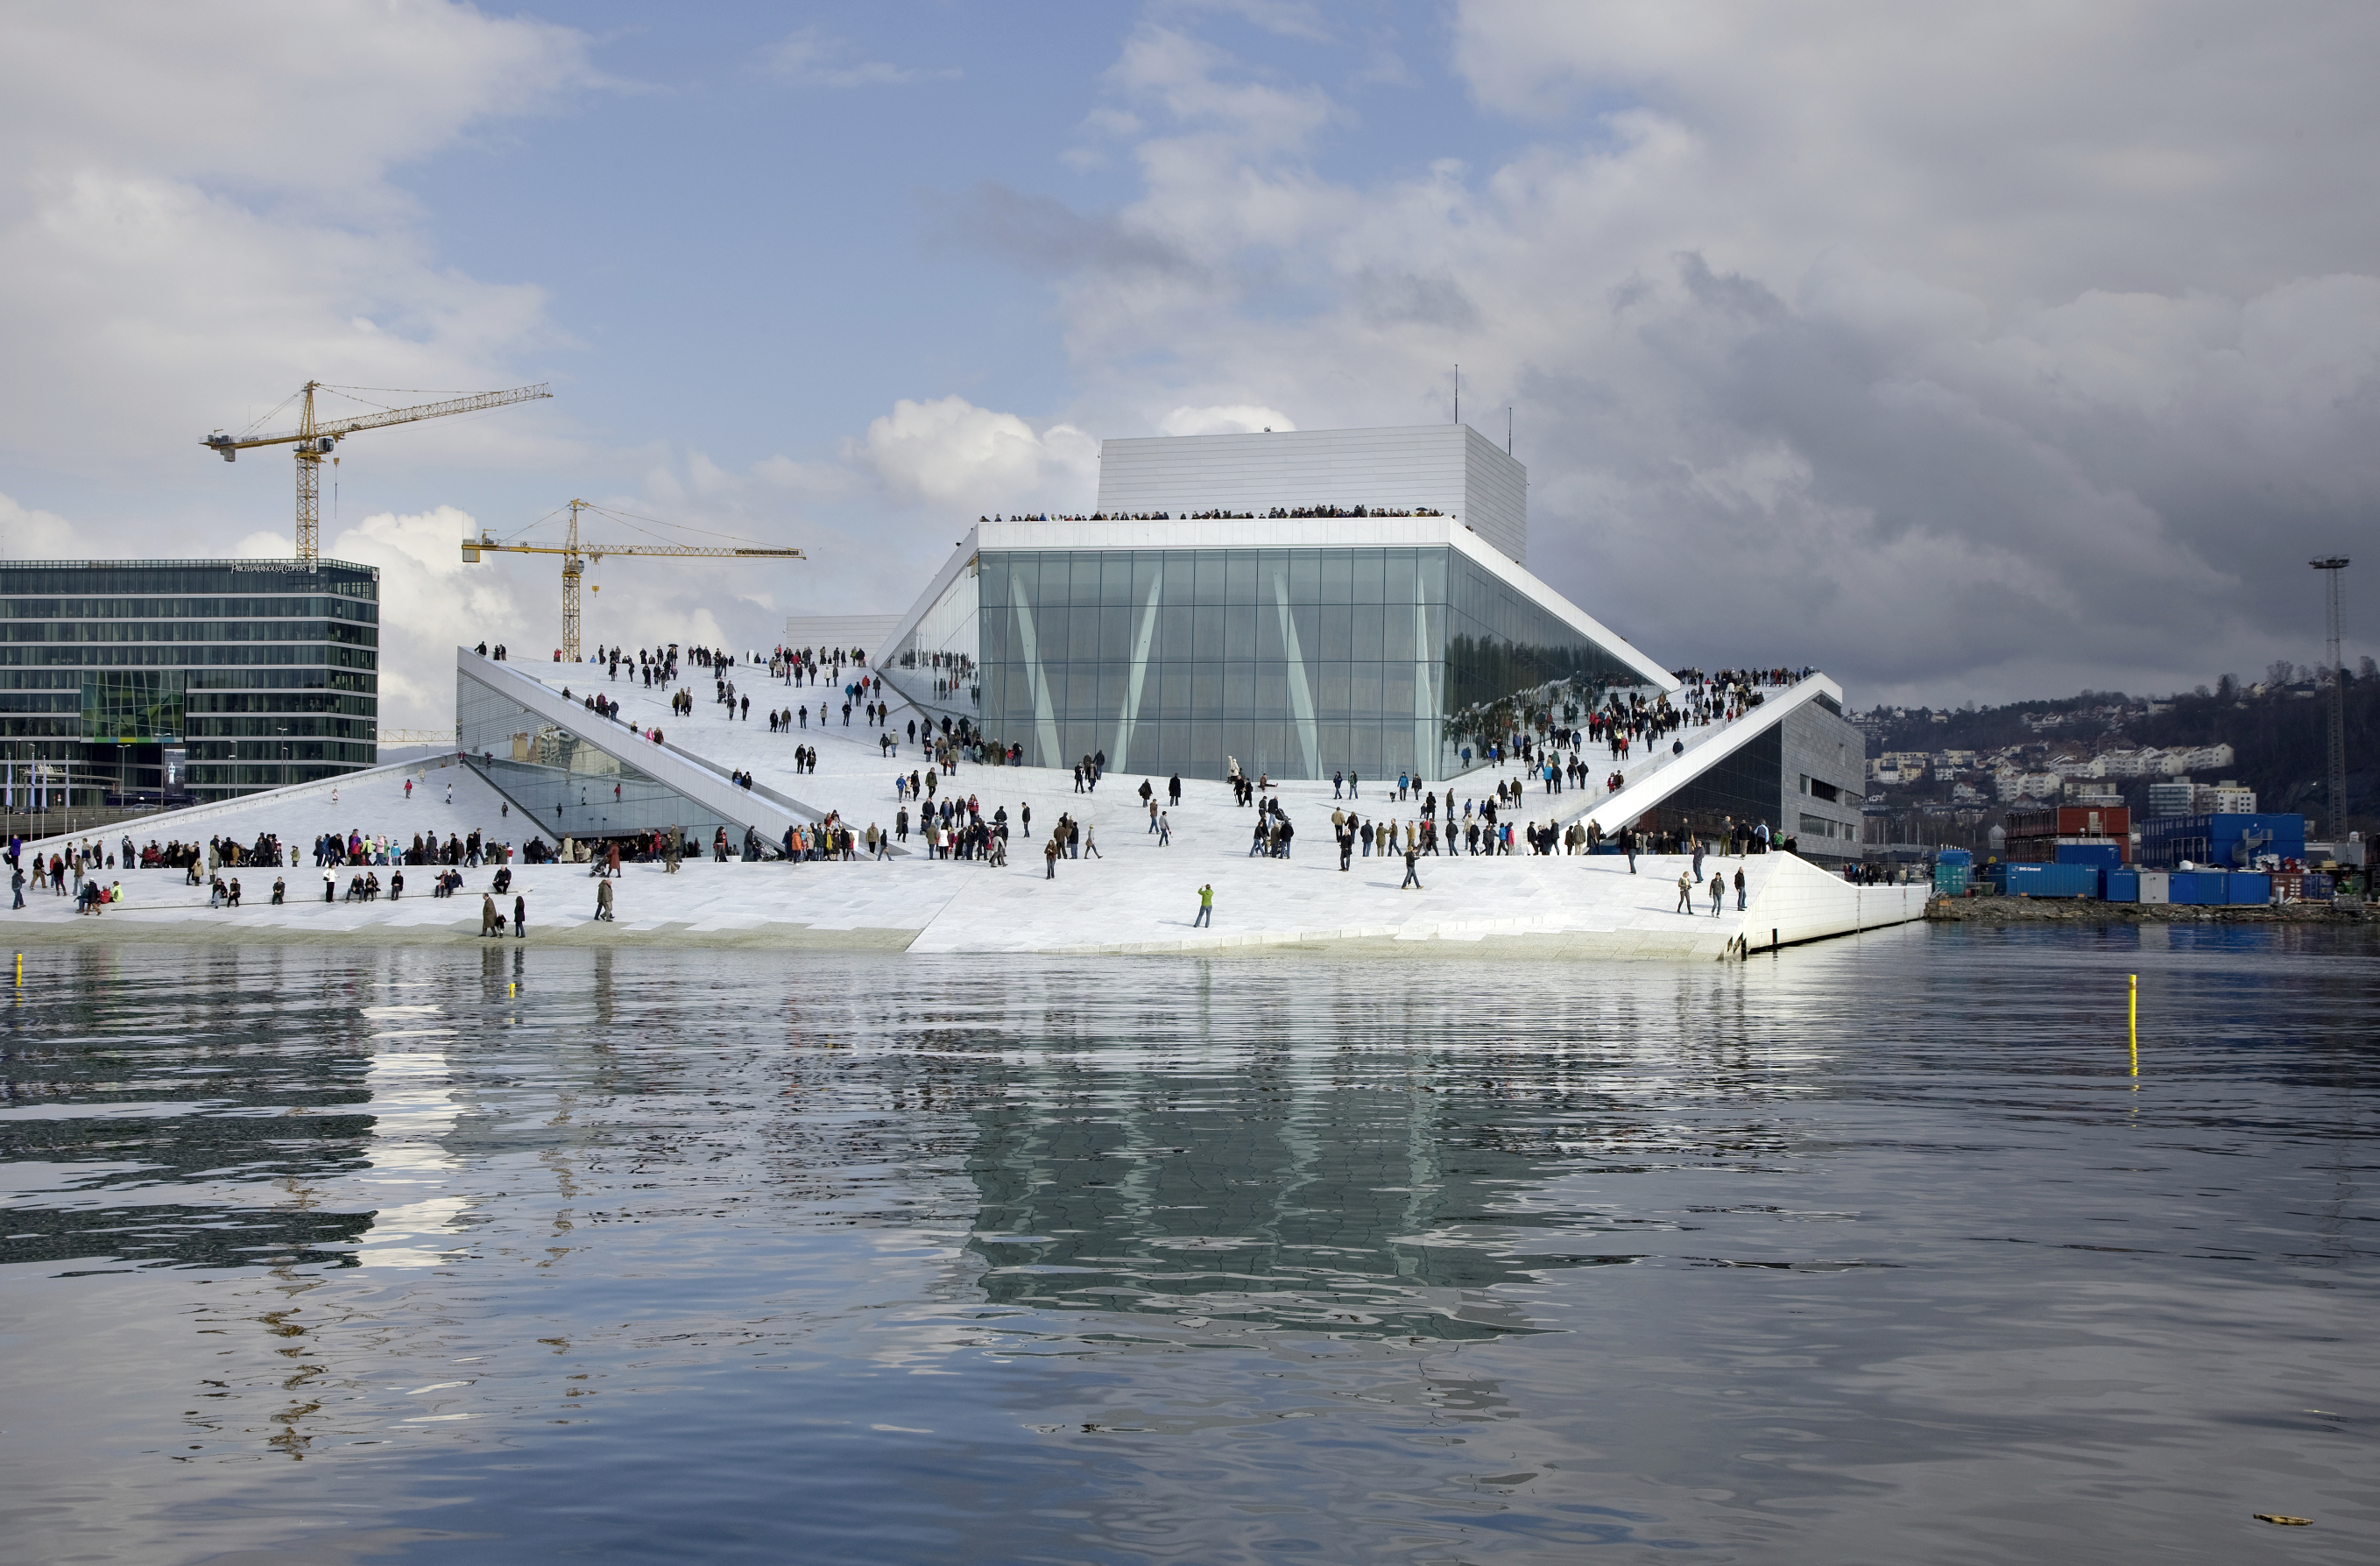 Le toit-terrasse de l’Opéra d’Oslo, situé en bordure de fjord, est entièrement accessible aux promeneurs pour devenir place publique. Pas besoin de tickets pour s’y rendre donc contrairement aux trois salles de concert qu’abrite le bâtiment. (Architecte : Snøhetta architects)